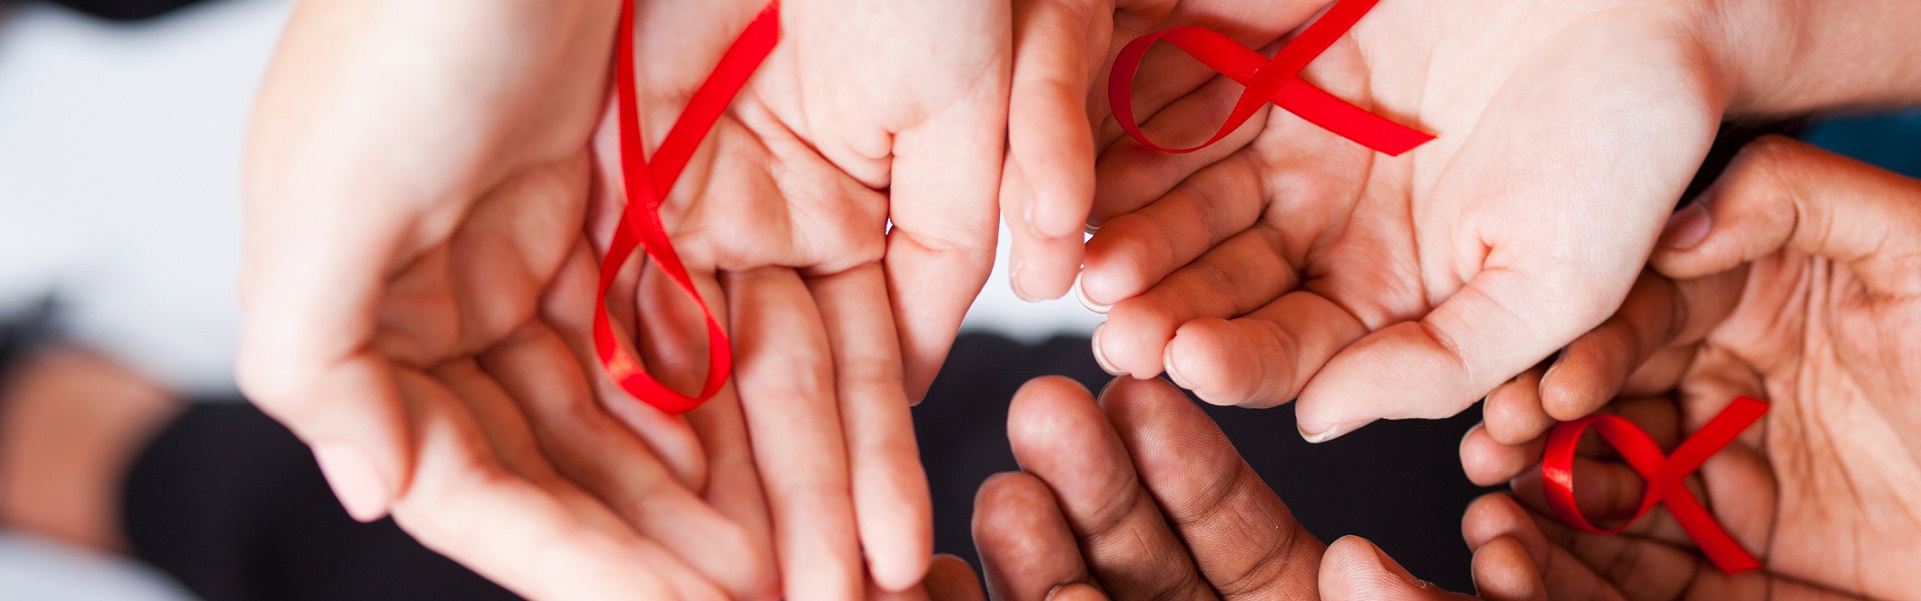 Se presenta Labor Positiva, una iniciativa para crear entornos laborales libres de discriminación por VIH